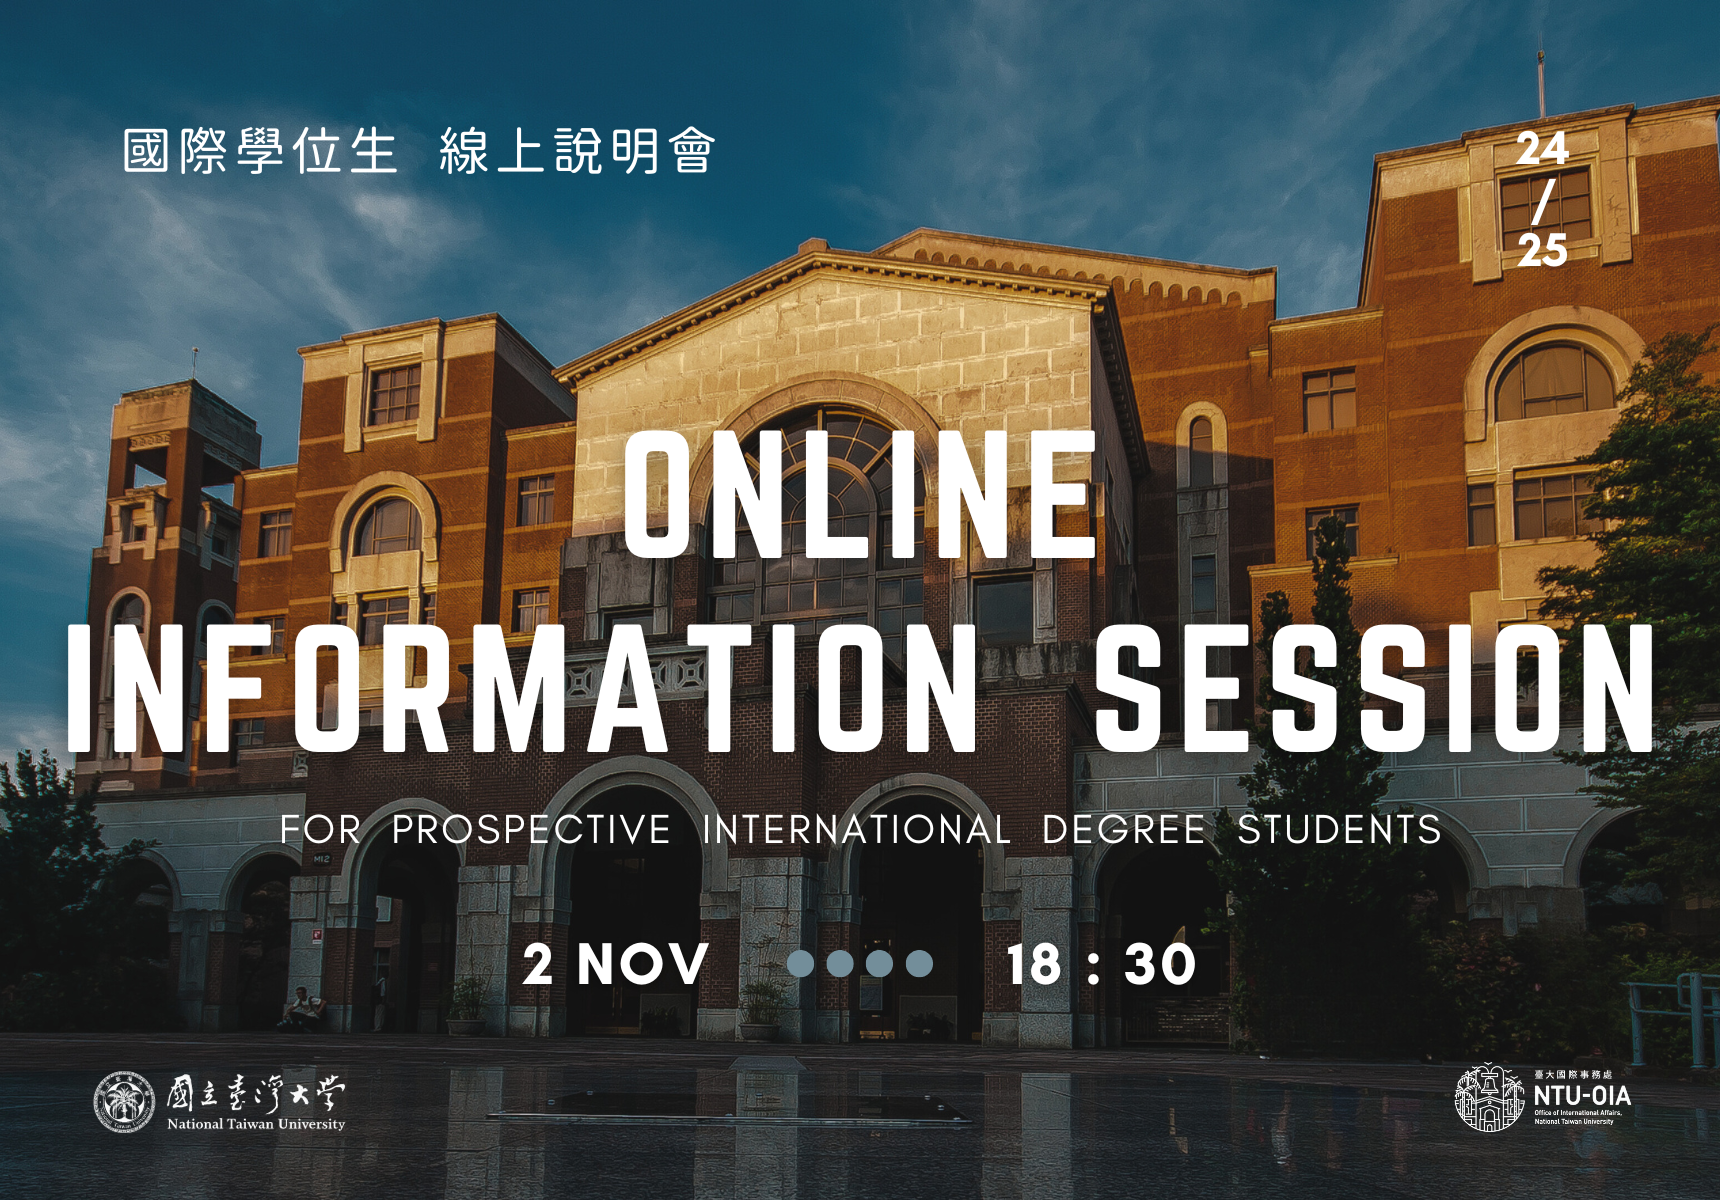 【26.10.2566】กิจกรรม NTU Online Information Session for International Degree Students